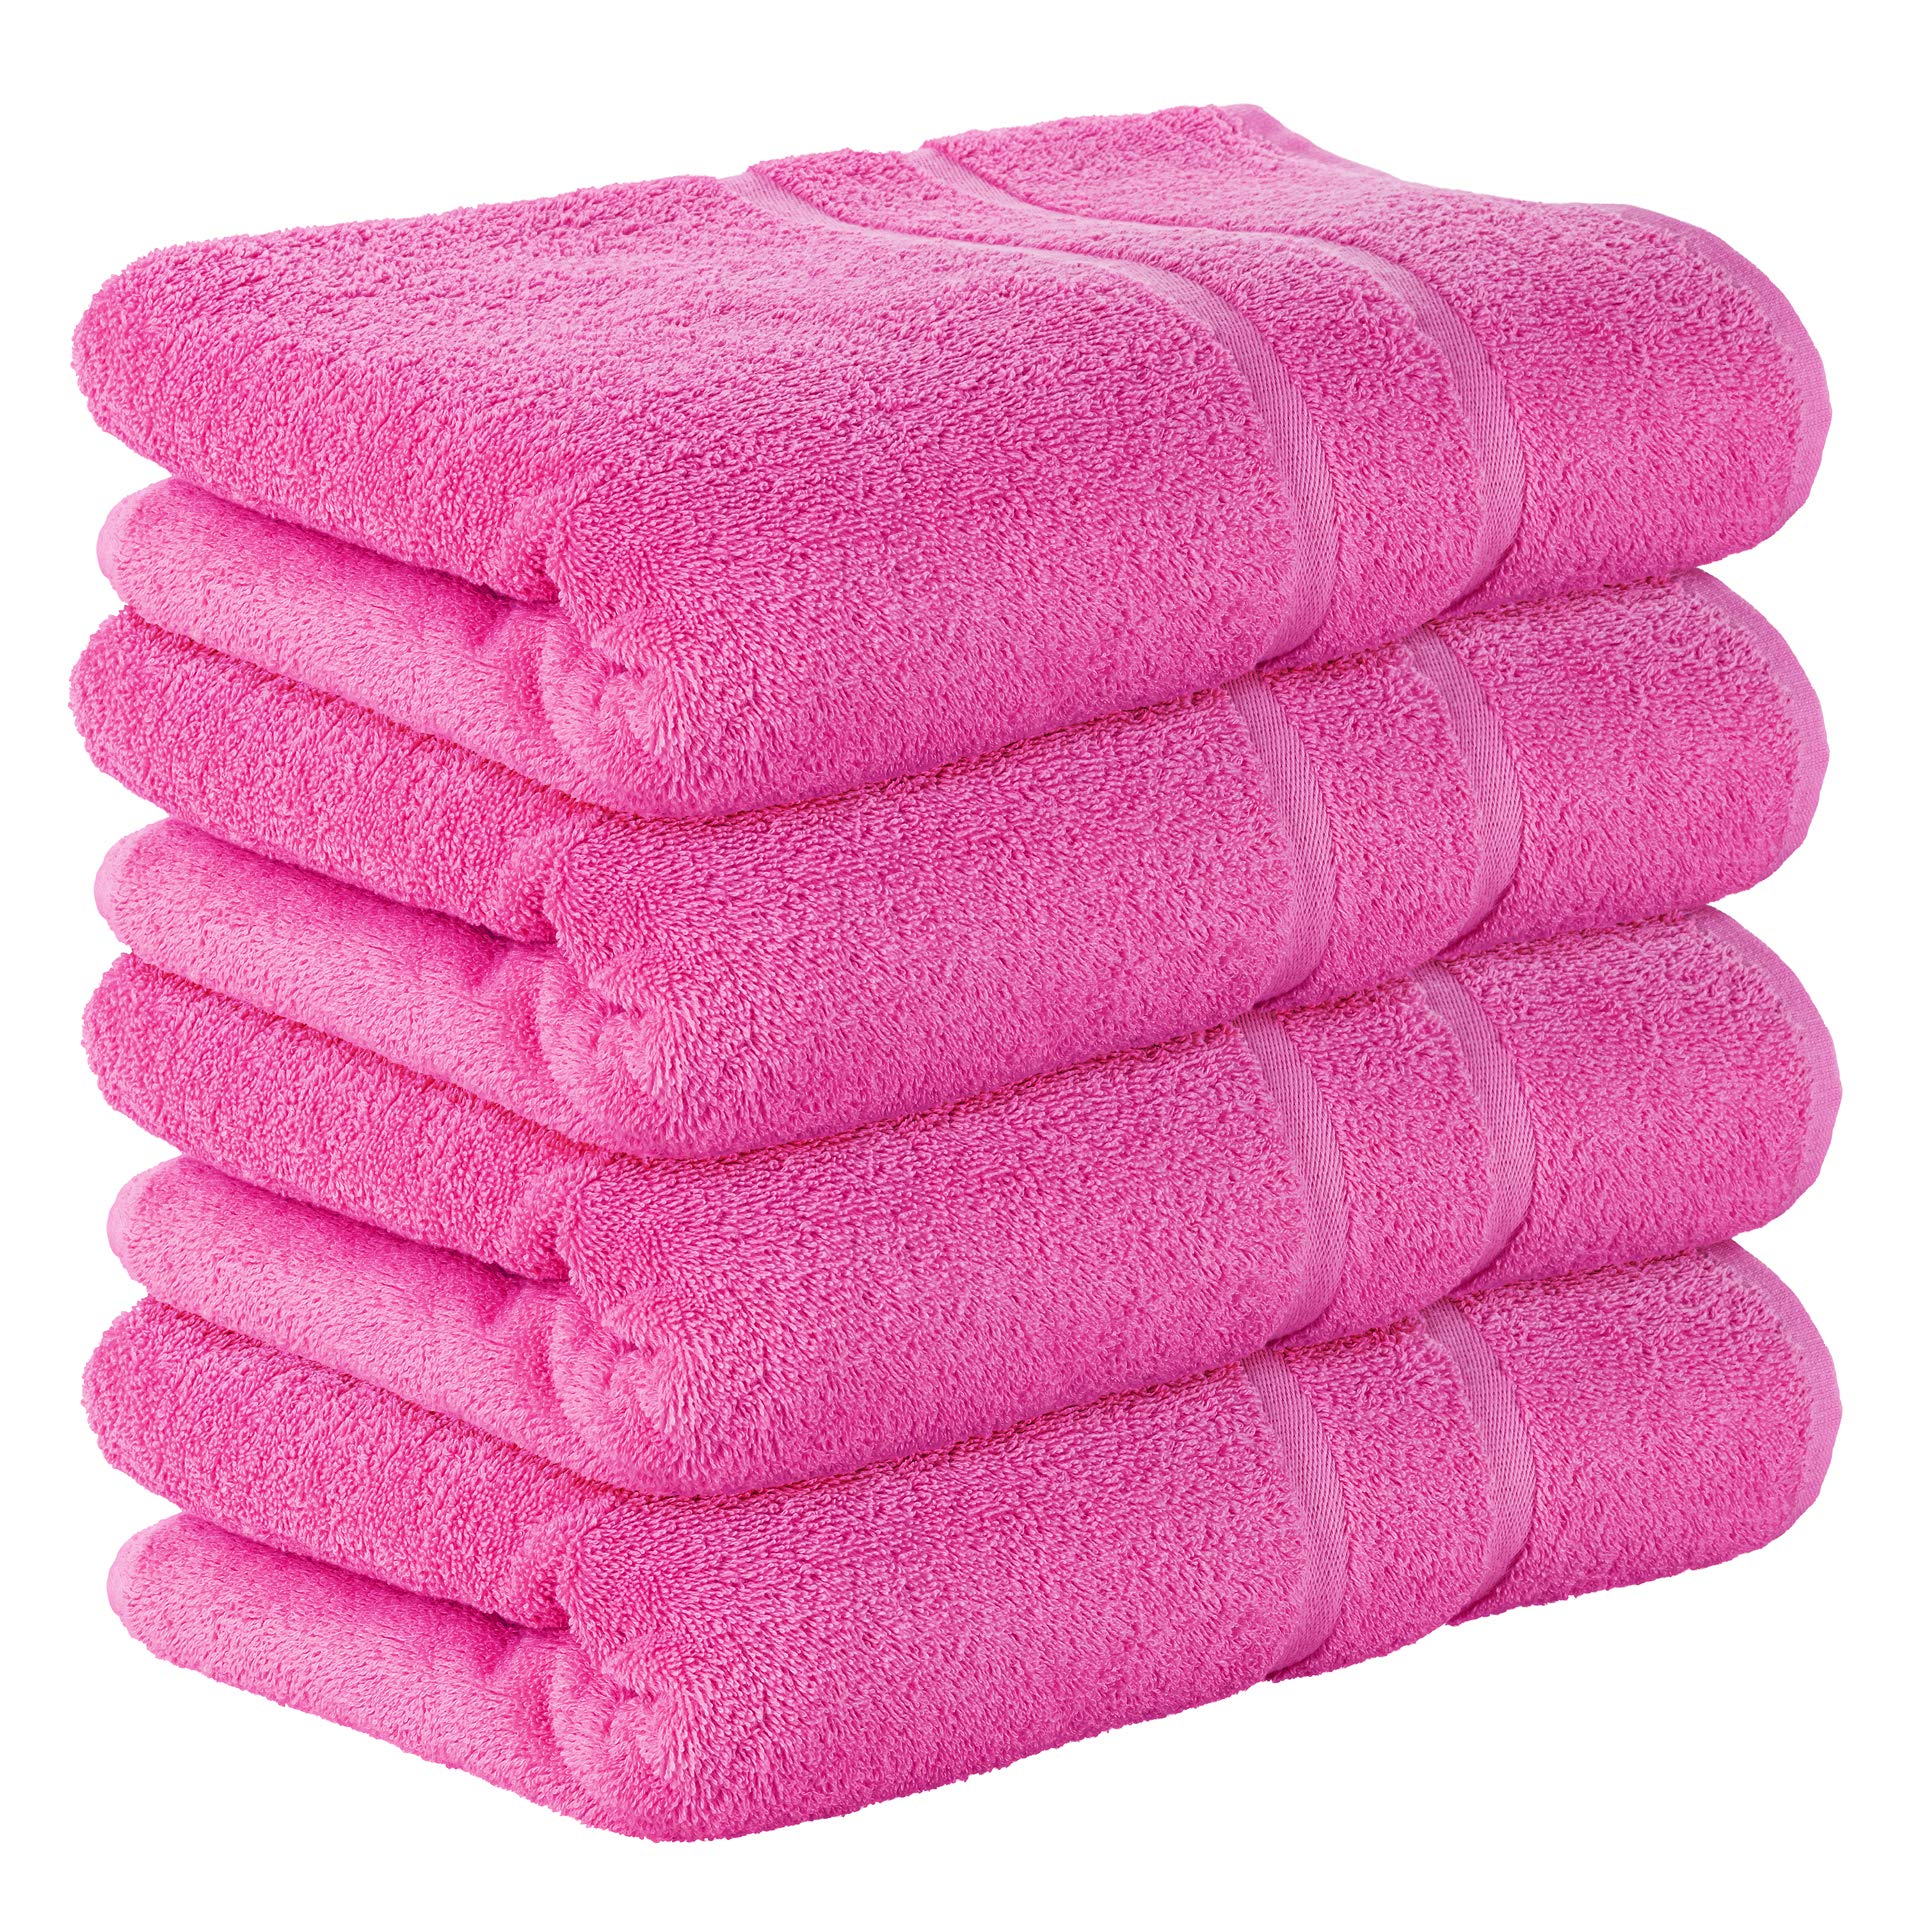 StickandShine 4er Set Premium Frottee Badetuch 100x150 cm in pink in 500g/m² aus 100% Baumwolle